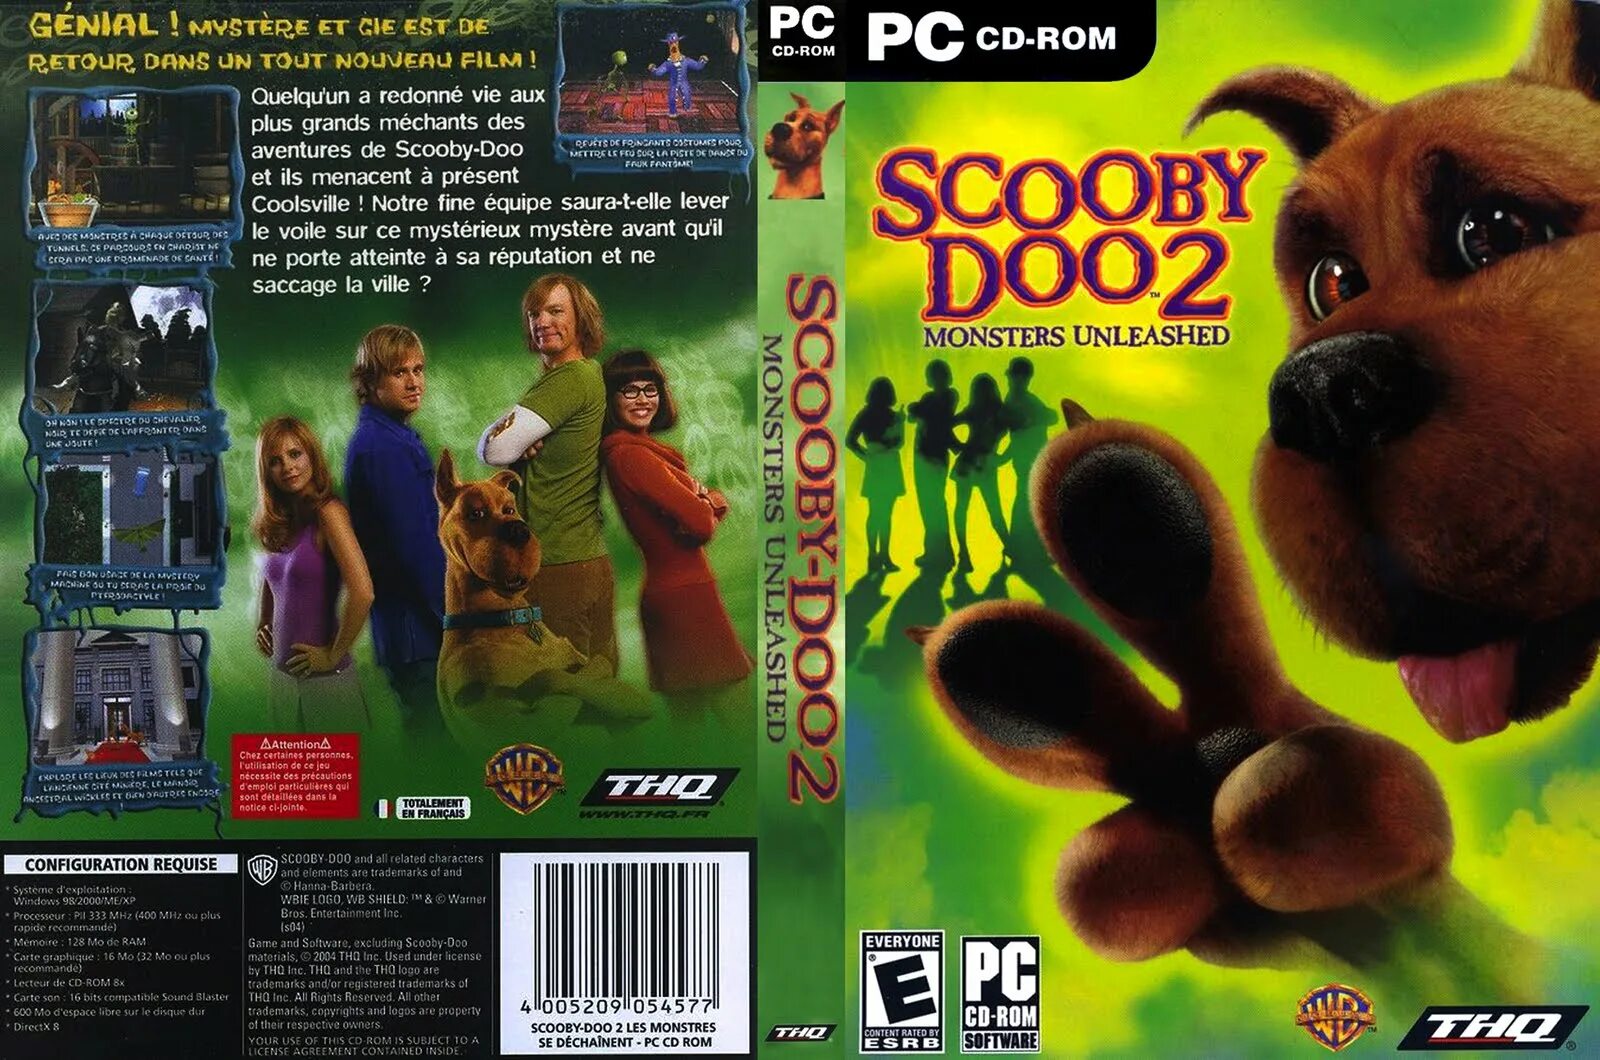 Scooby doo games. Scooby Doo 2 Monsters unleashed игра. Игры Scooby Doo монстры на свободе. Скуби-Ду 2 монстры на свободе. Игра Старая на диске Скуби Ду.